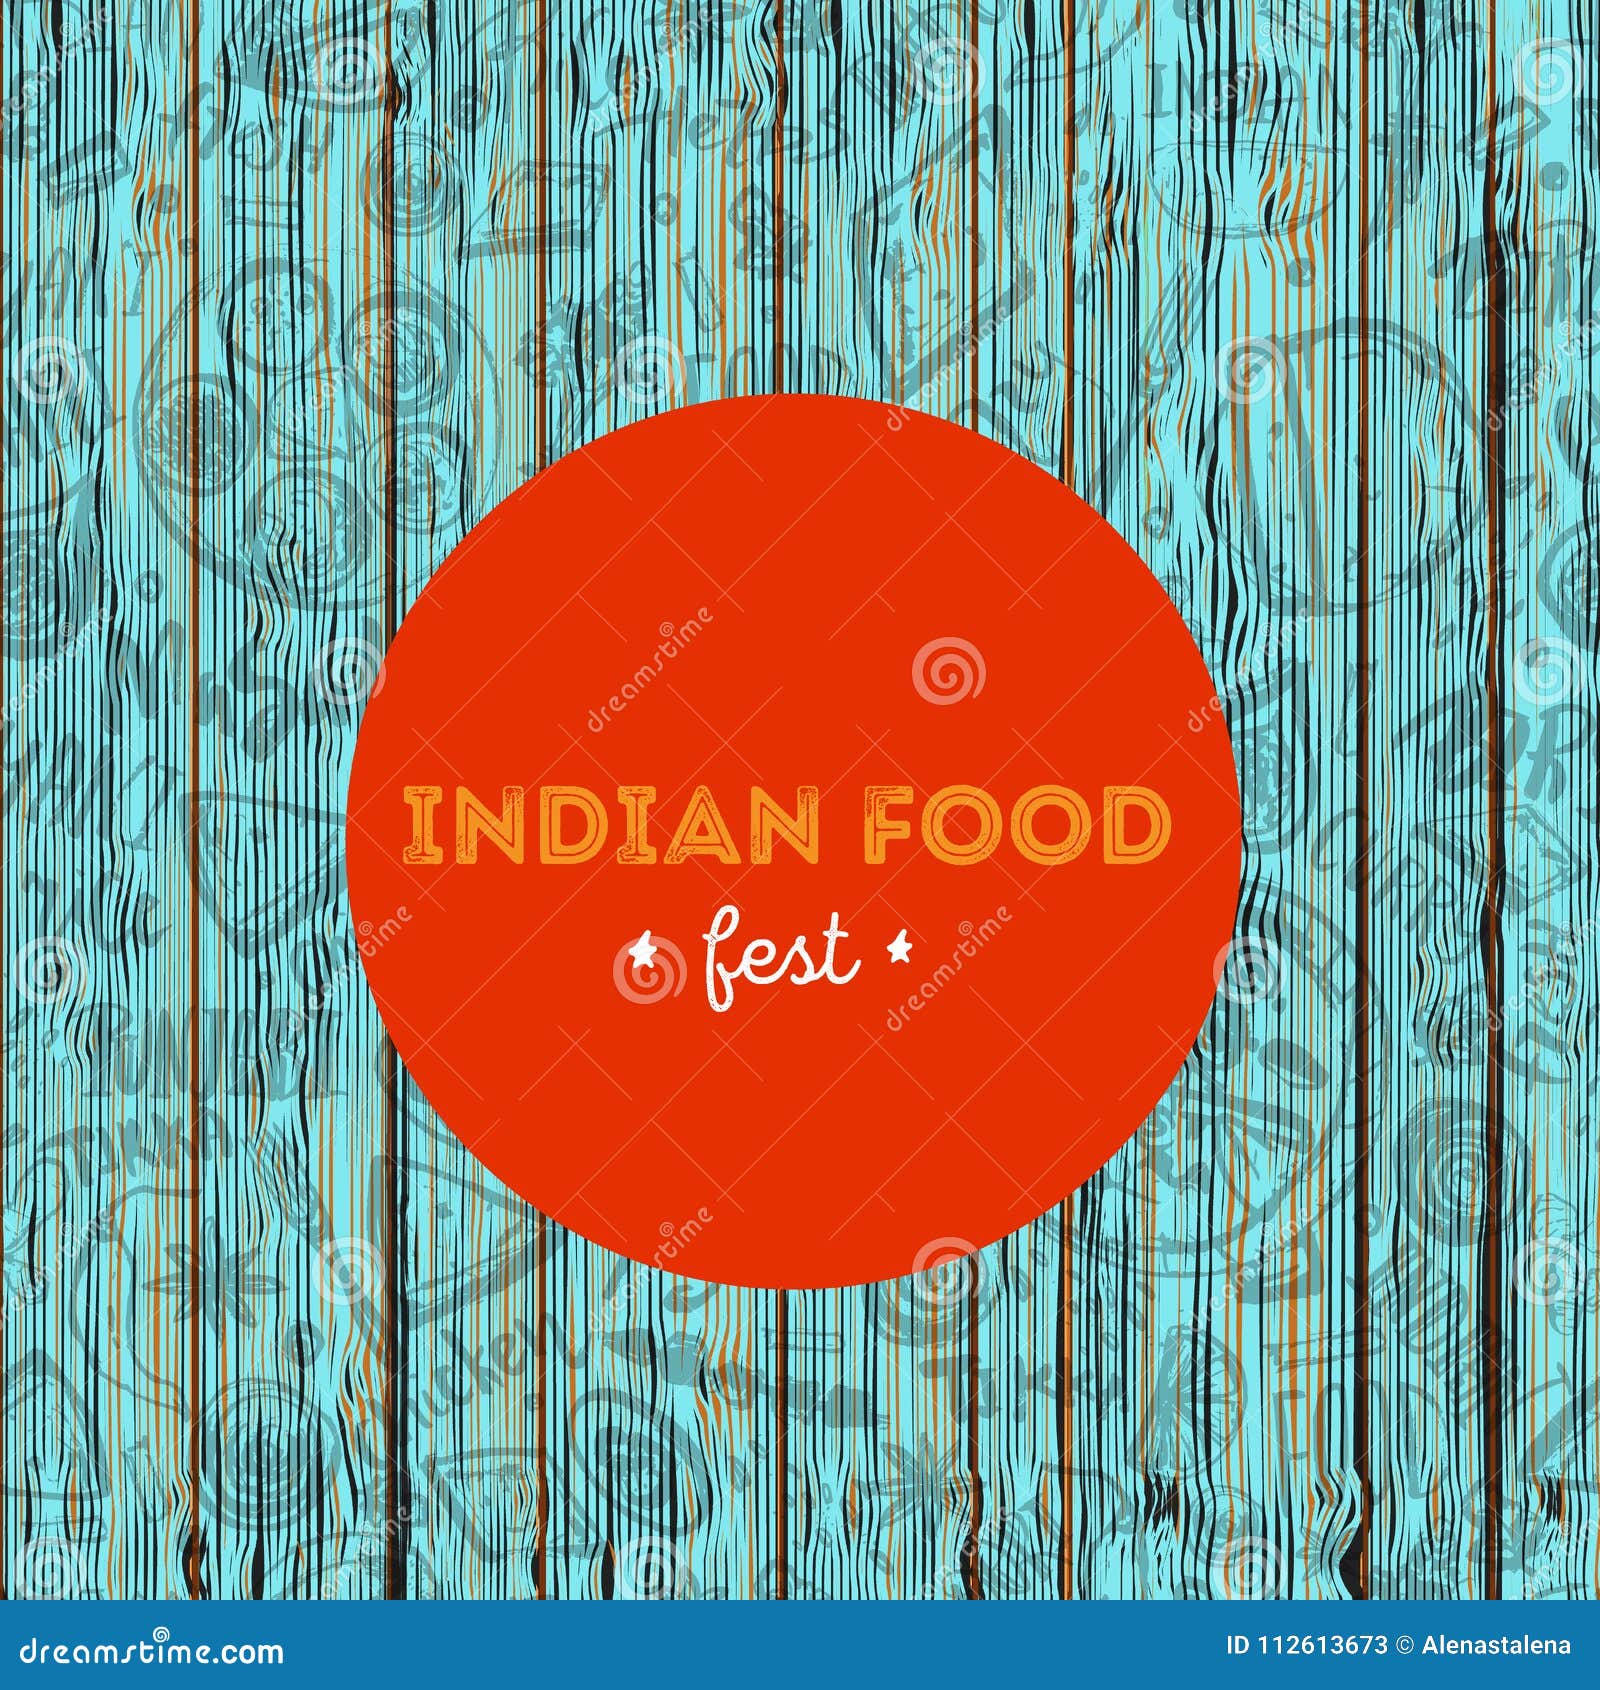 Đang tìm kiếm thực đơn đồ ăn Ấn Độ tuyệt vời và đa dạng? Hãy tham khảo ngay thực đơn đầy đủ của chúng tôi để tìm thấy món ăn Ấn Độ phù hợp với sở thích của bạn. Nhấp vào hình ảnh để khám phá thực đơn của chúng tôi nào!